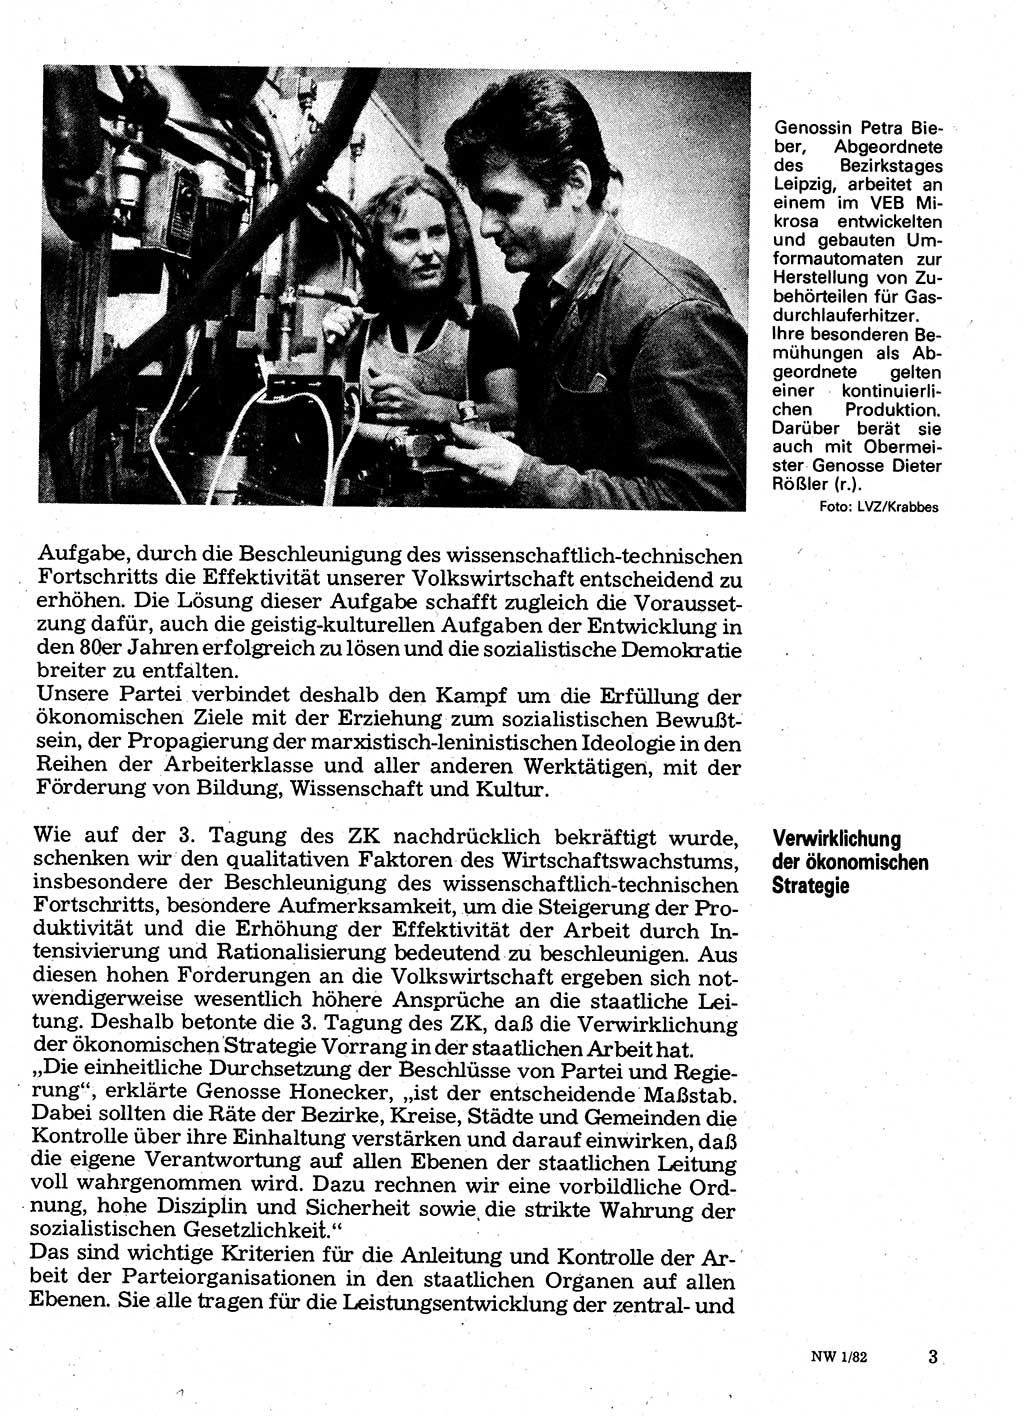 Neuer Weg (NW), Organ des Zentralkomitees (ZK) der SED (Sozialistische Einheitspartei Deutschlands) für Fragen des Parteilebens, 37. Jahrgang [Deutsche Demokratische Republik (DDR)] 1982, Seite 3 (NW ZK SED DDR 1982, S. 3)